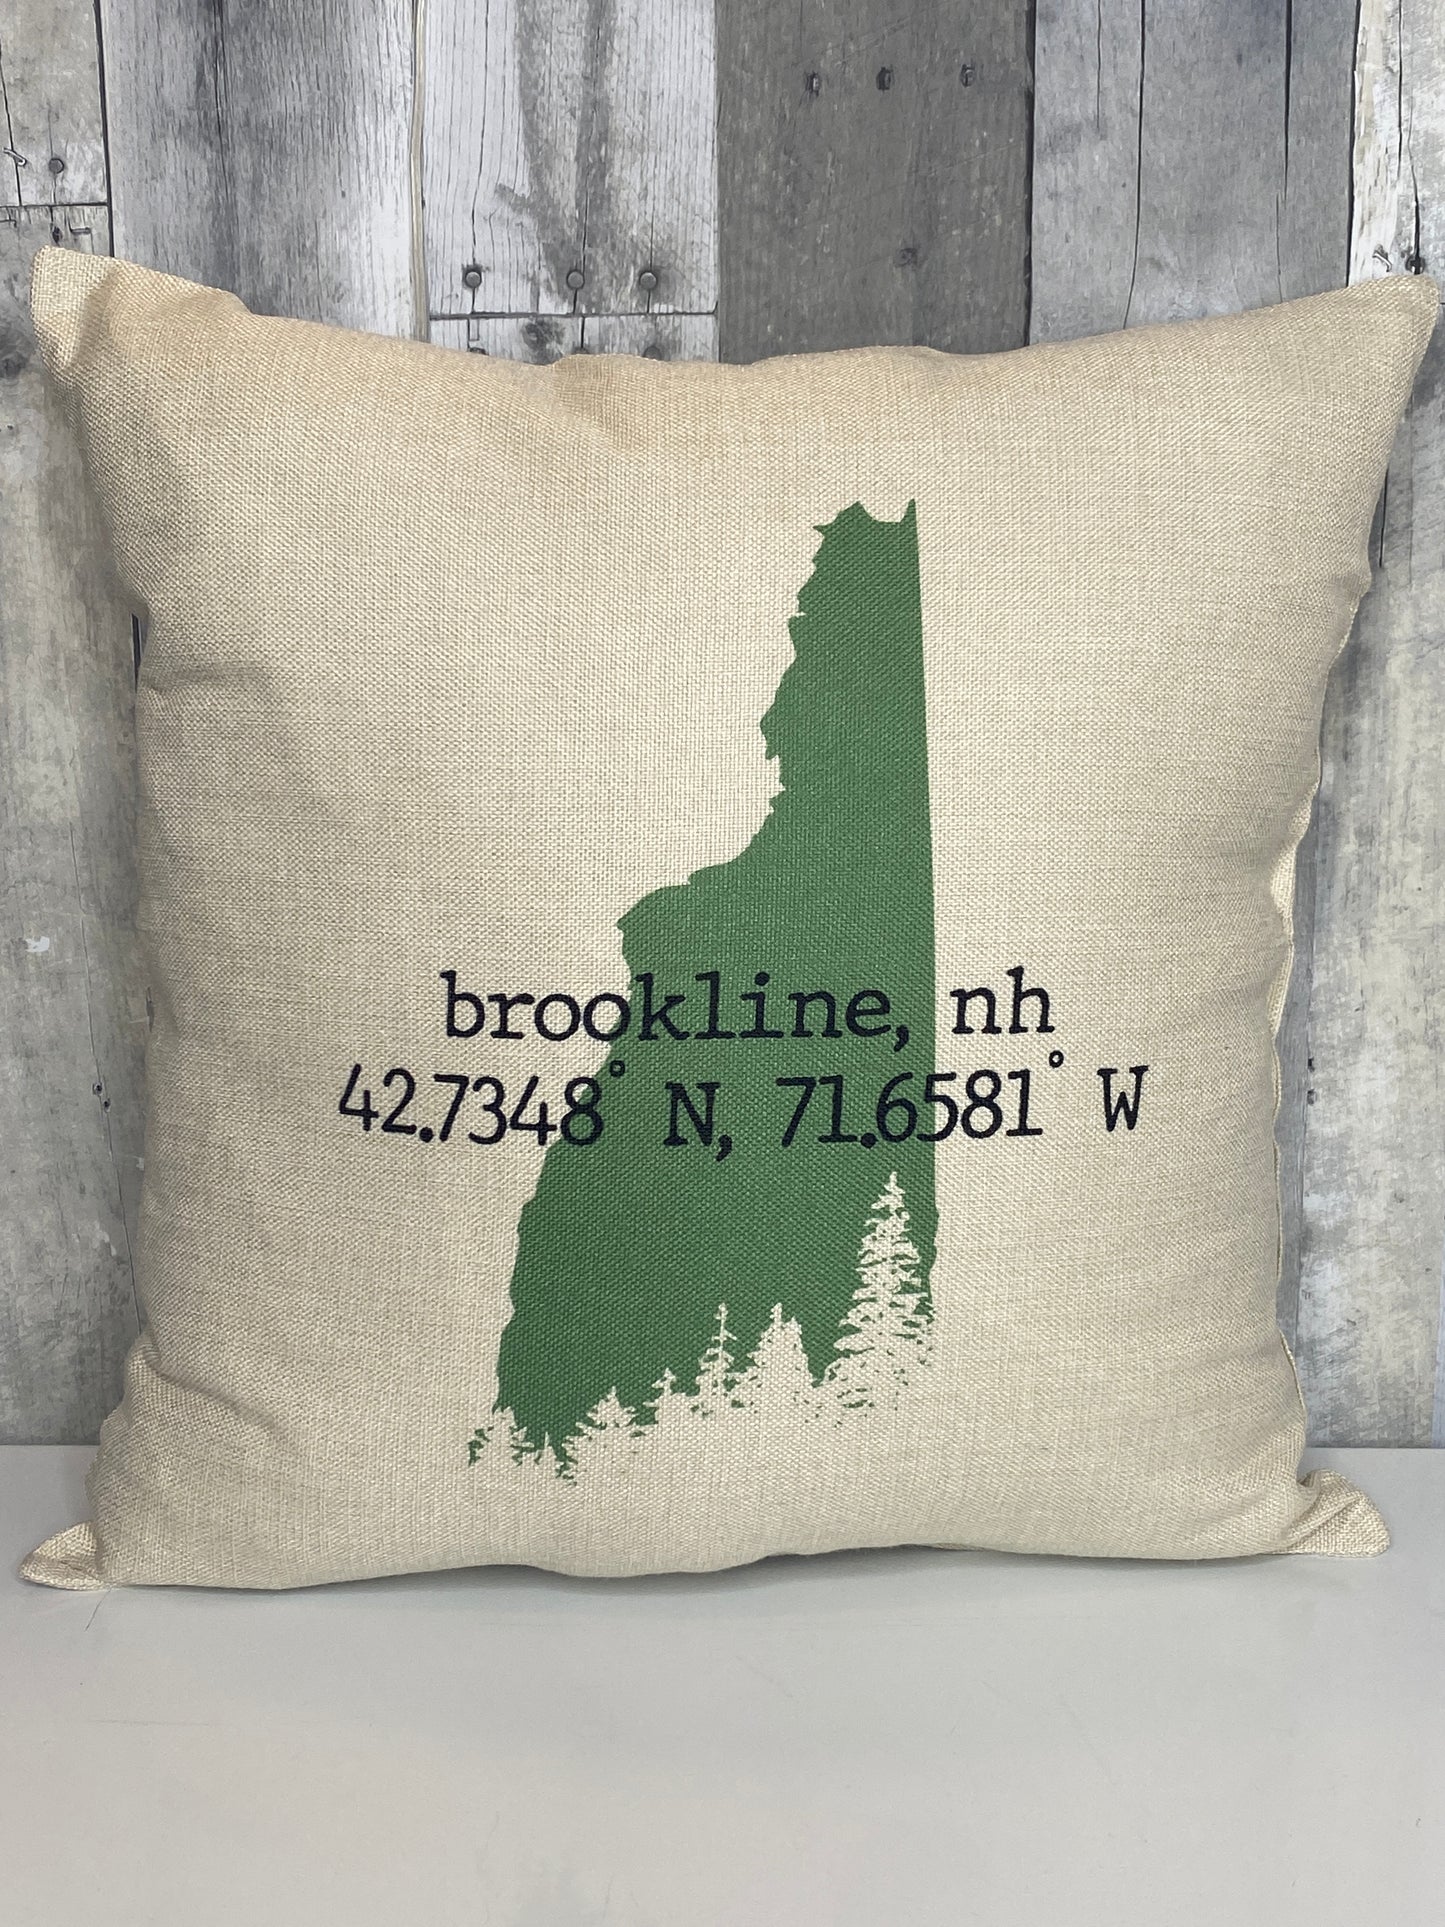 Brookline NH Coordinates Pillow